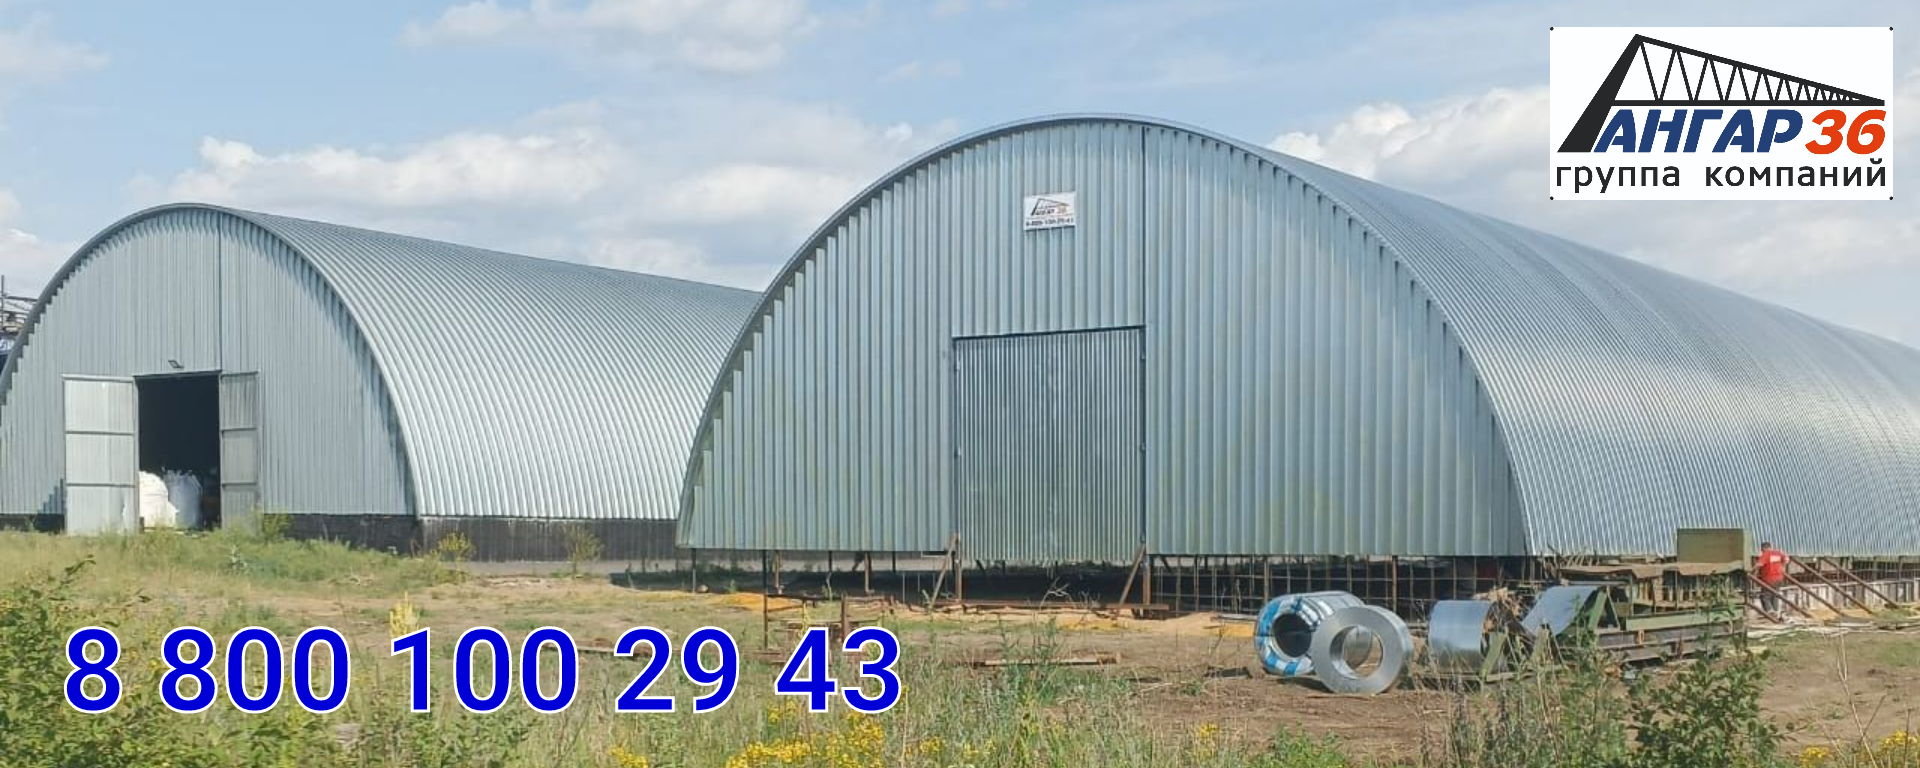 Построить зернохранилище арочного типа в Новой Усмани